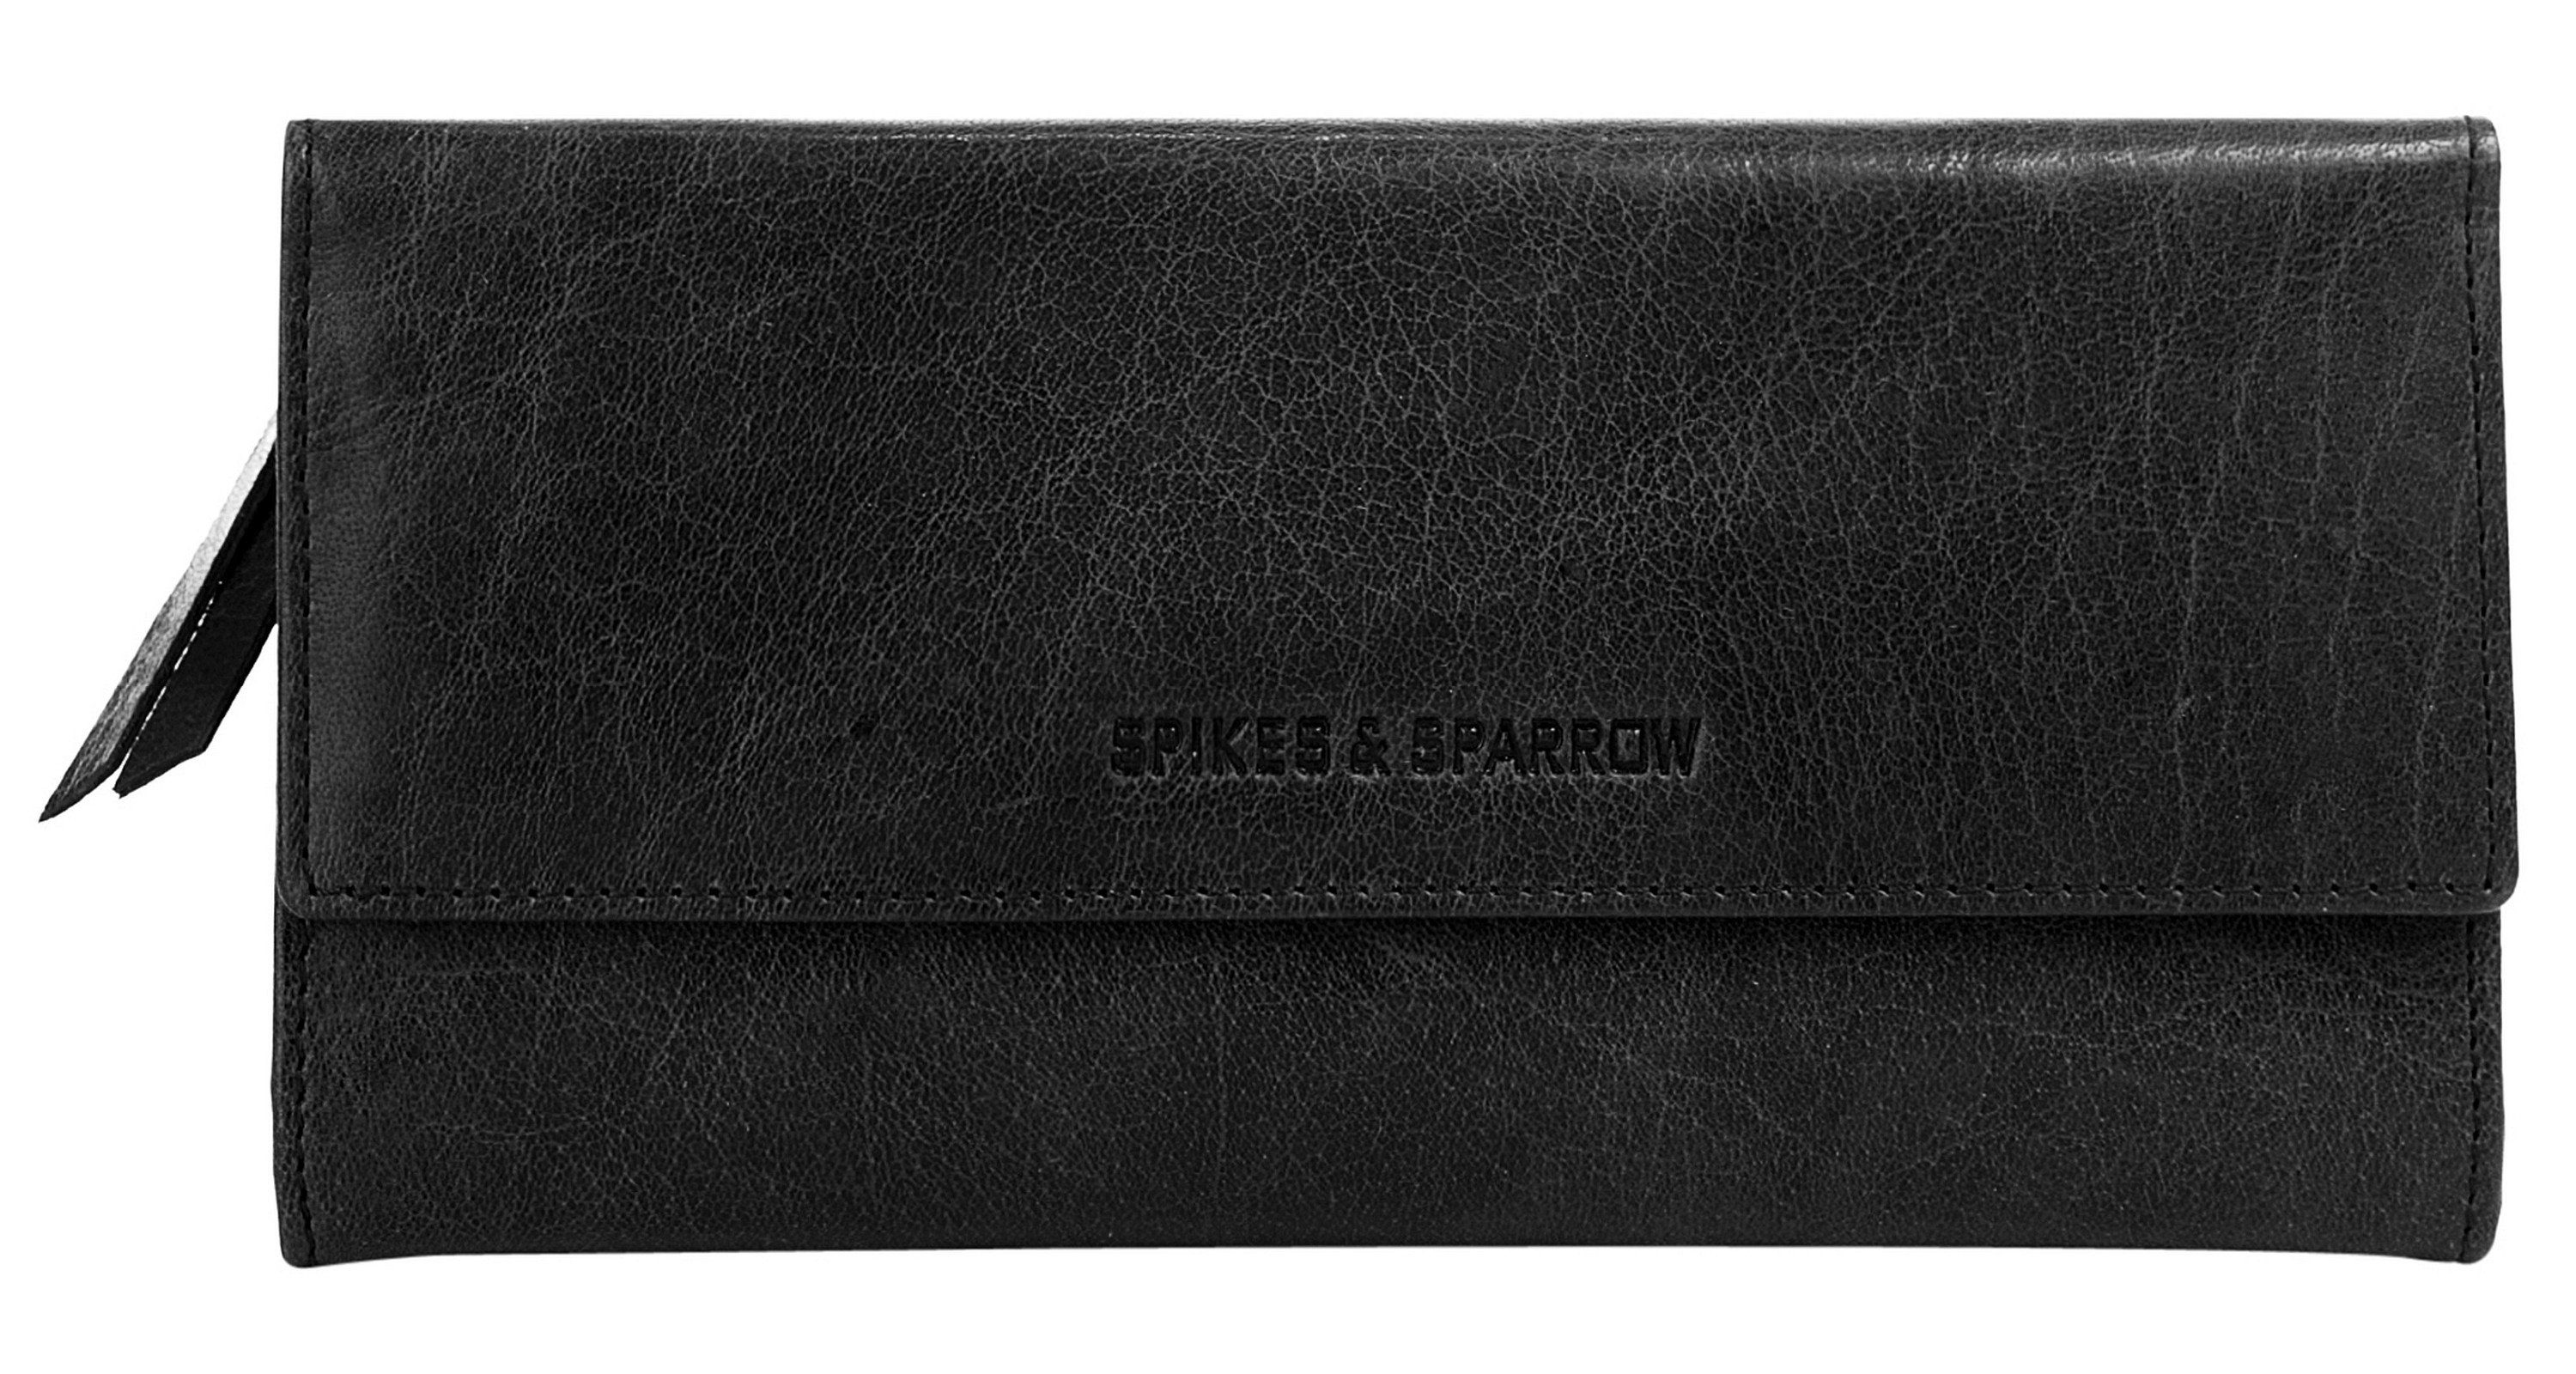 Spikes & Sparrow Geldbörse, echt Leder schwarz